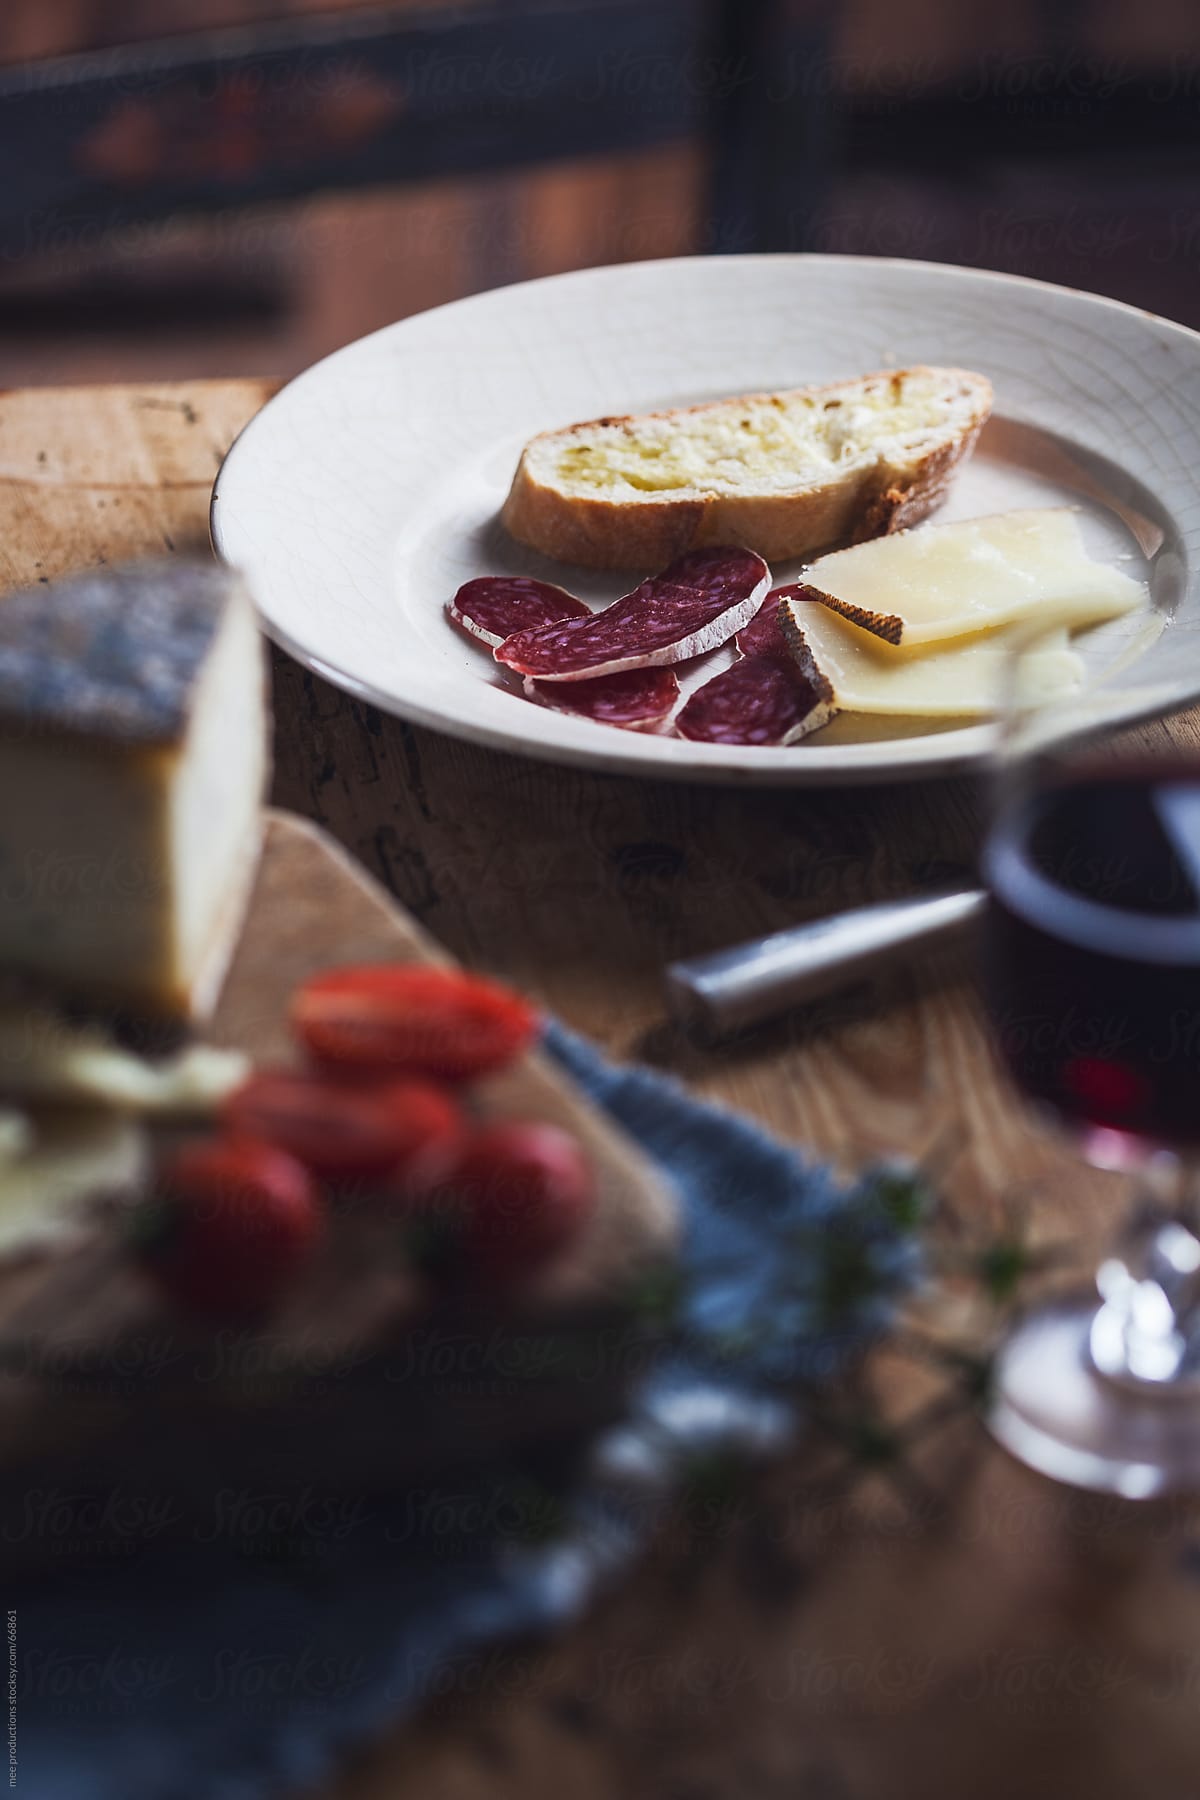 Mediterranean diet, sausage cheese and wine.